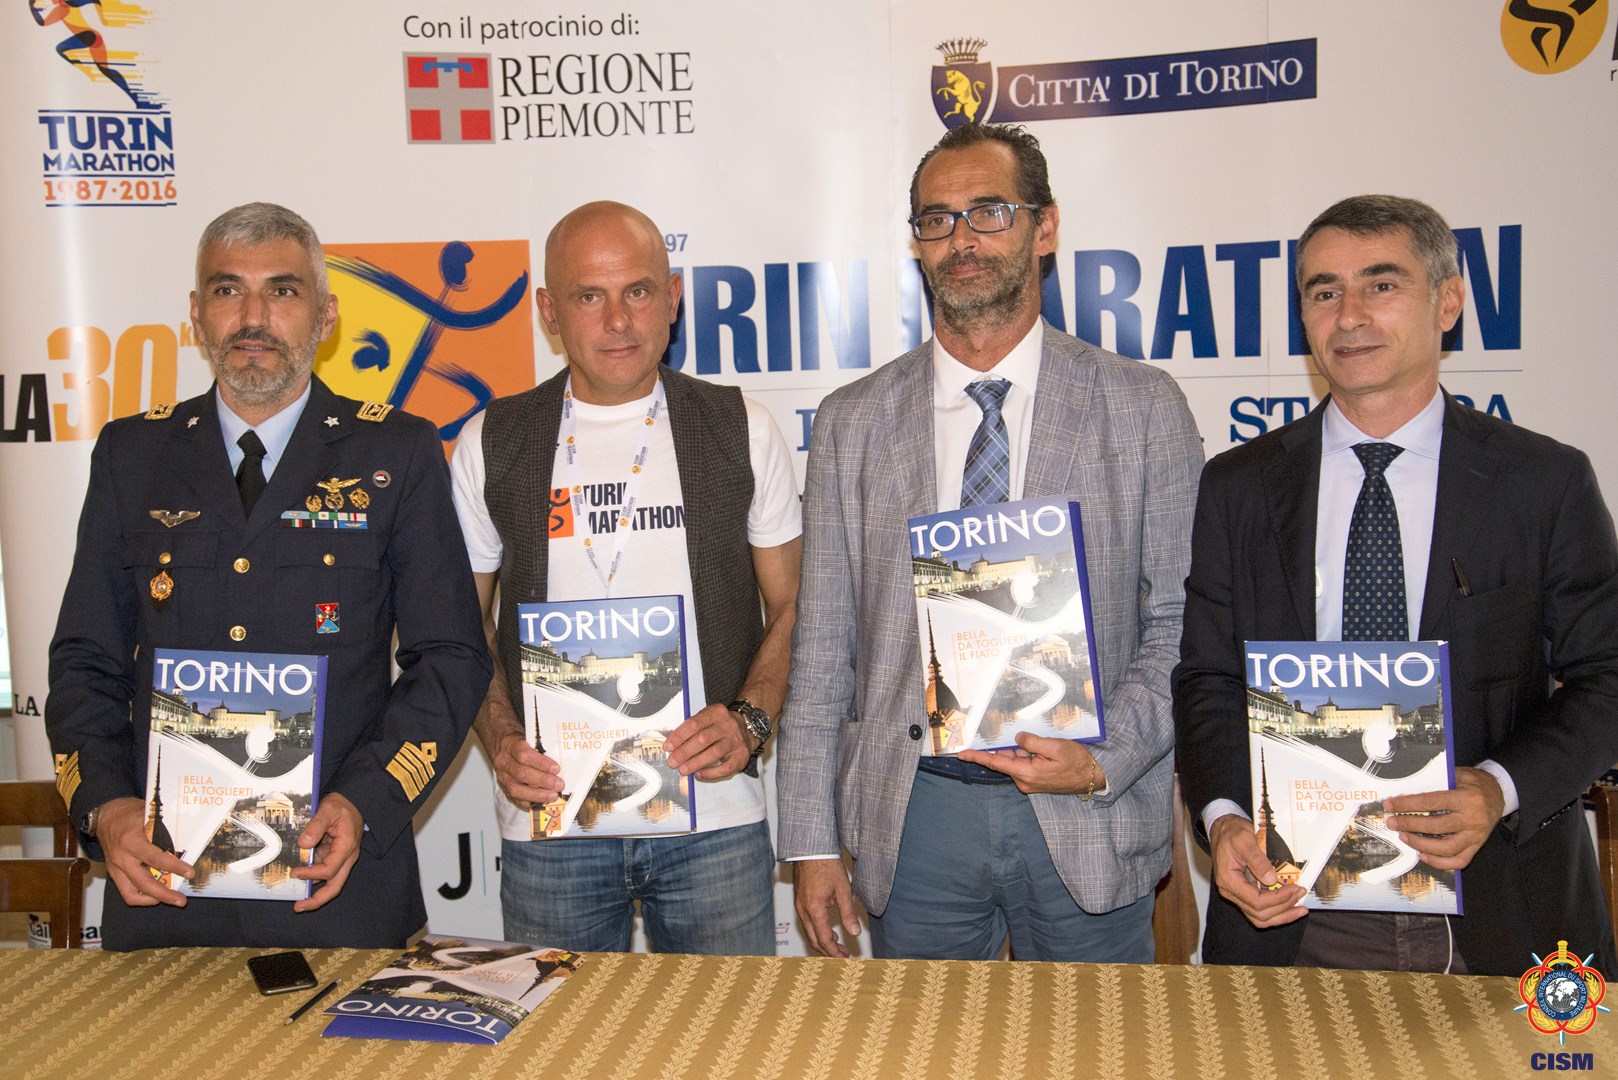 48th WMC Marathon – Torino (ITA) - Update